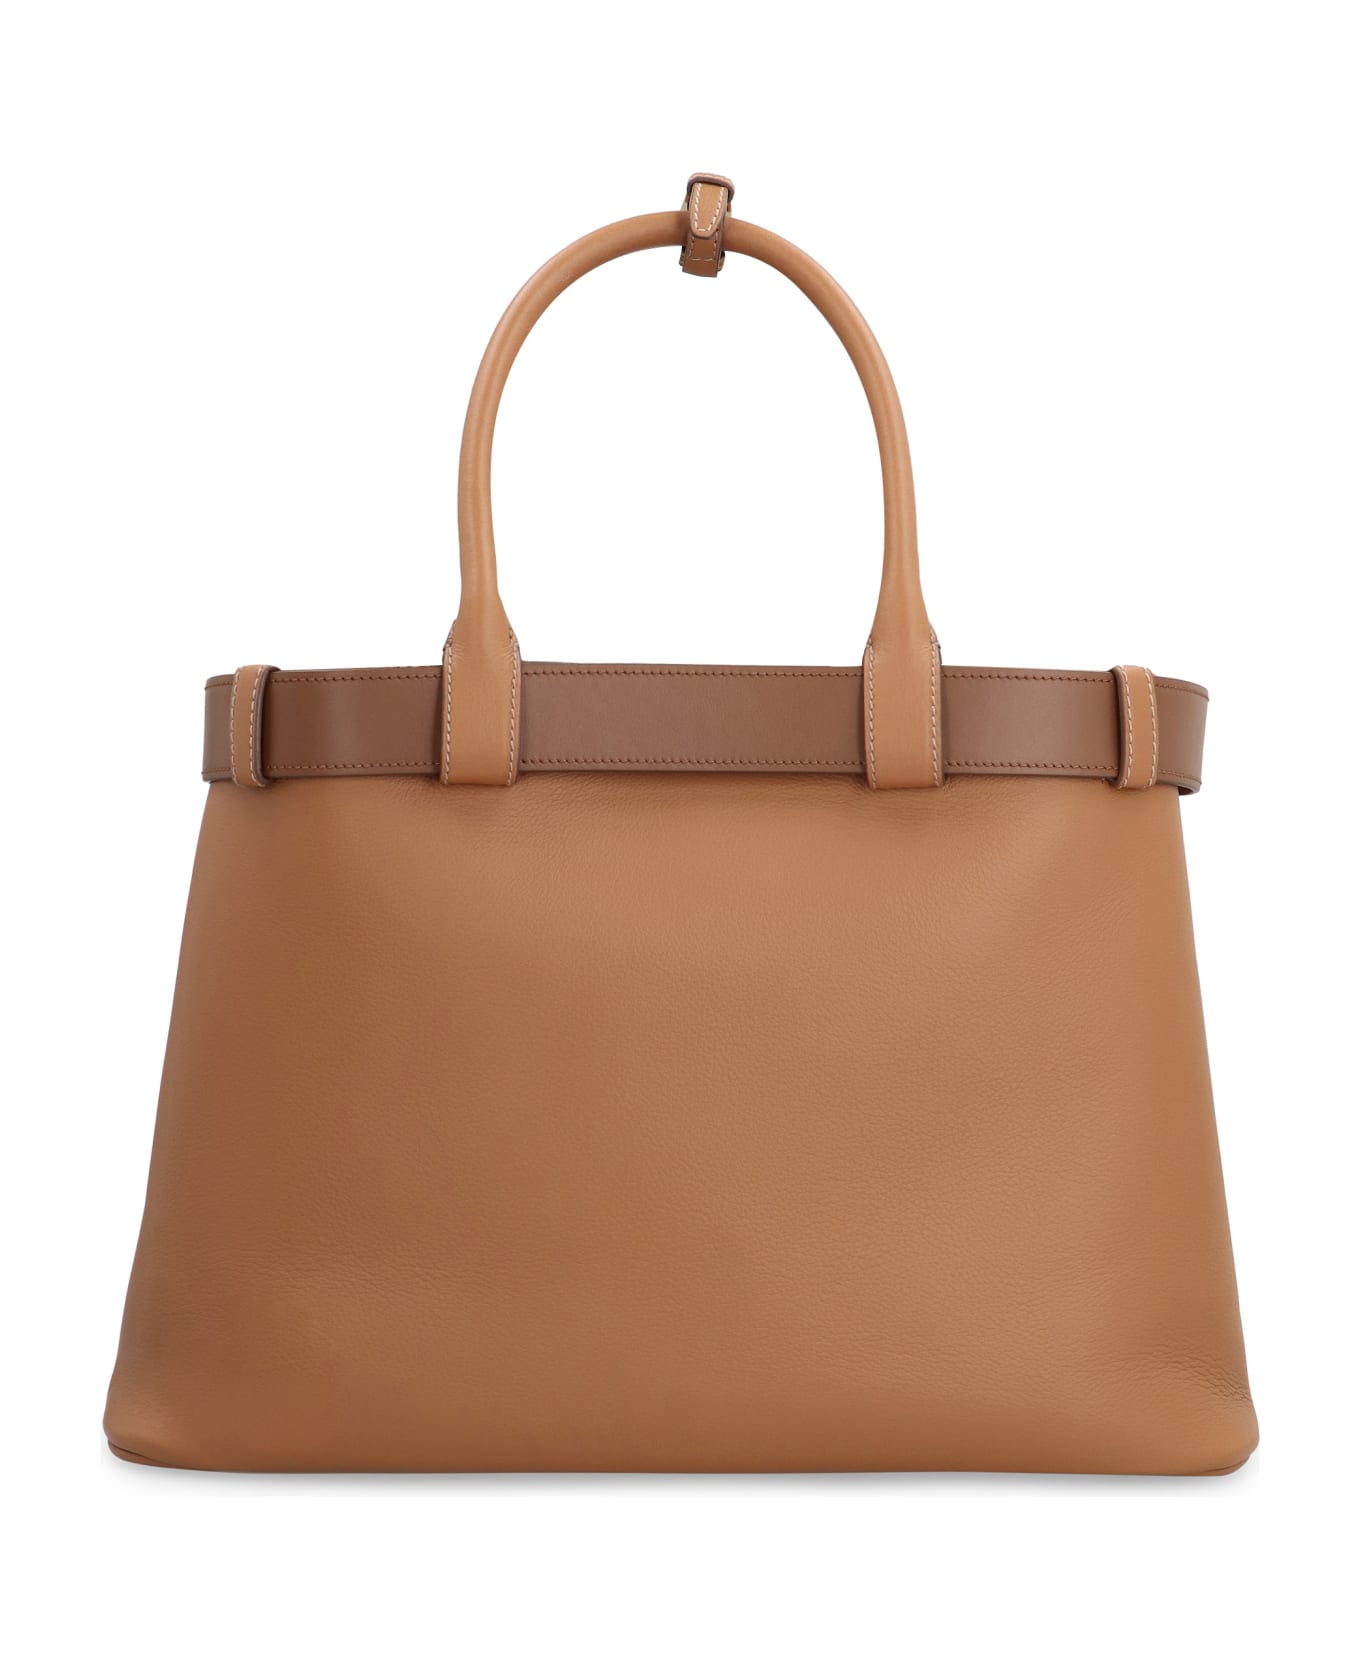 Prada Buckle Leather Bag - Saddle Brown